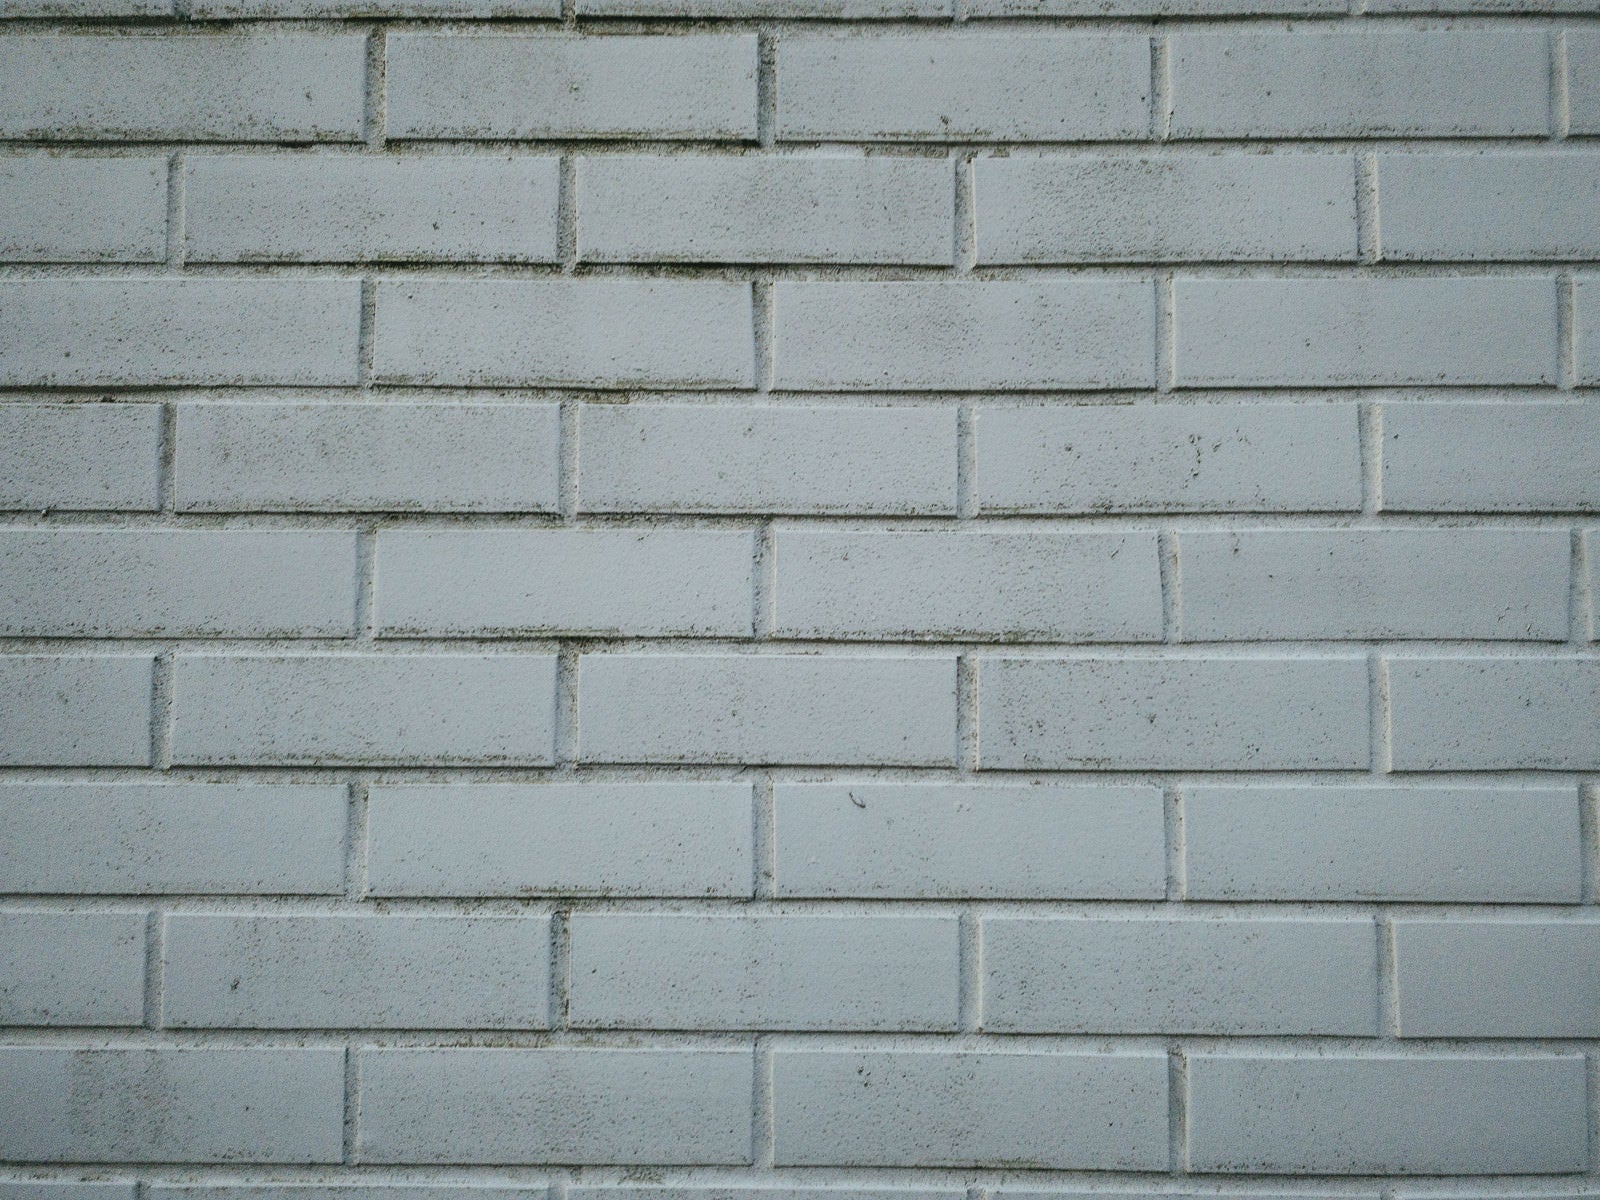 「一色に塗られた煉瓦の壁（テクスチャー）」の写真